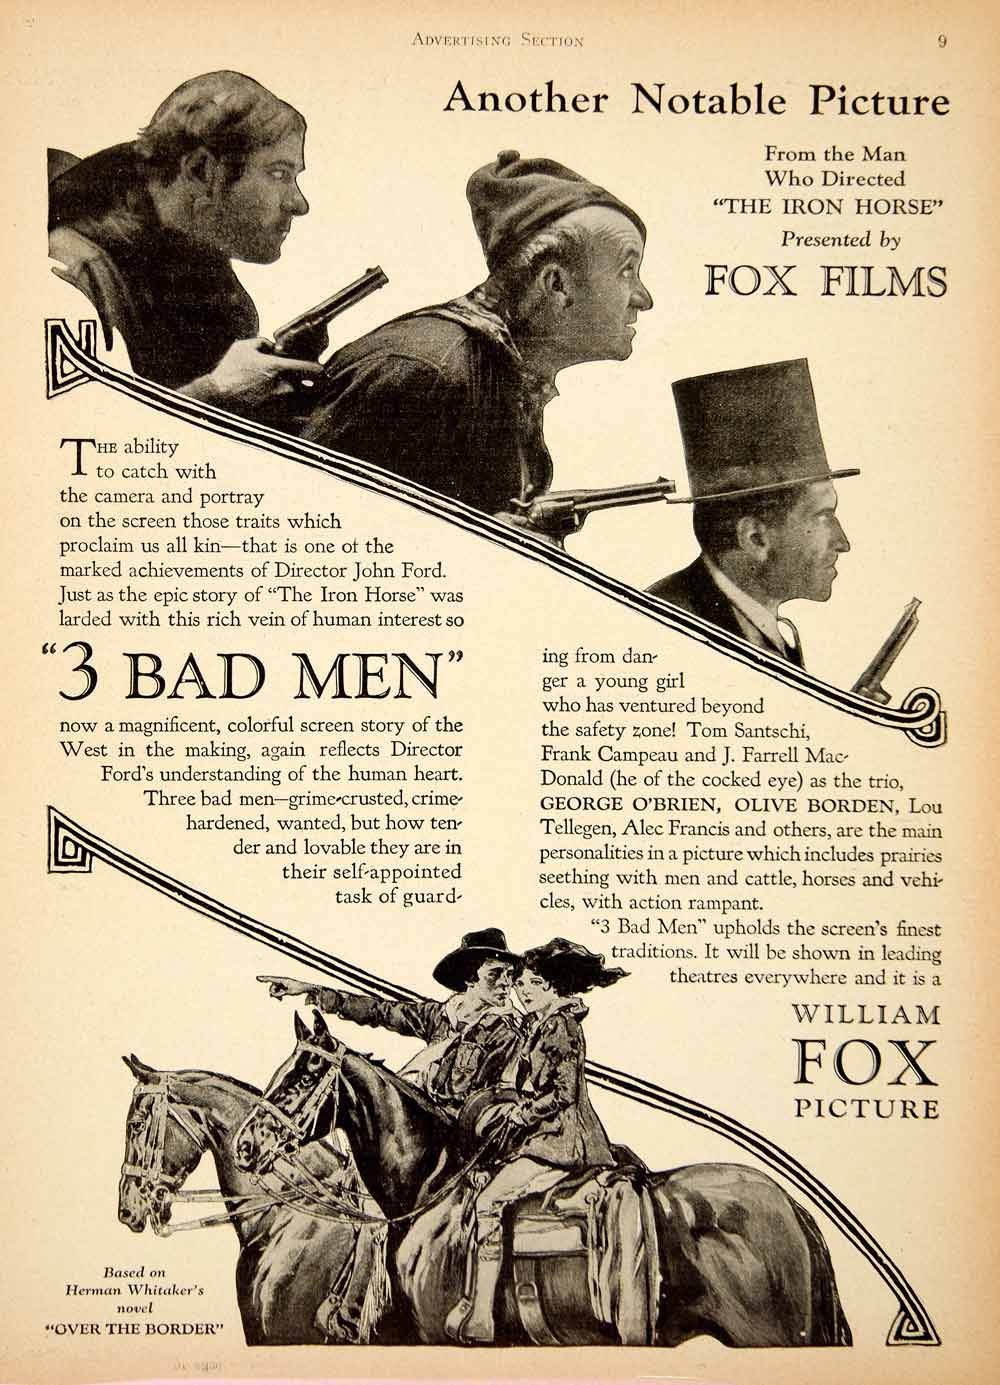 3 Bad Men (1926) Screenshot 2 